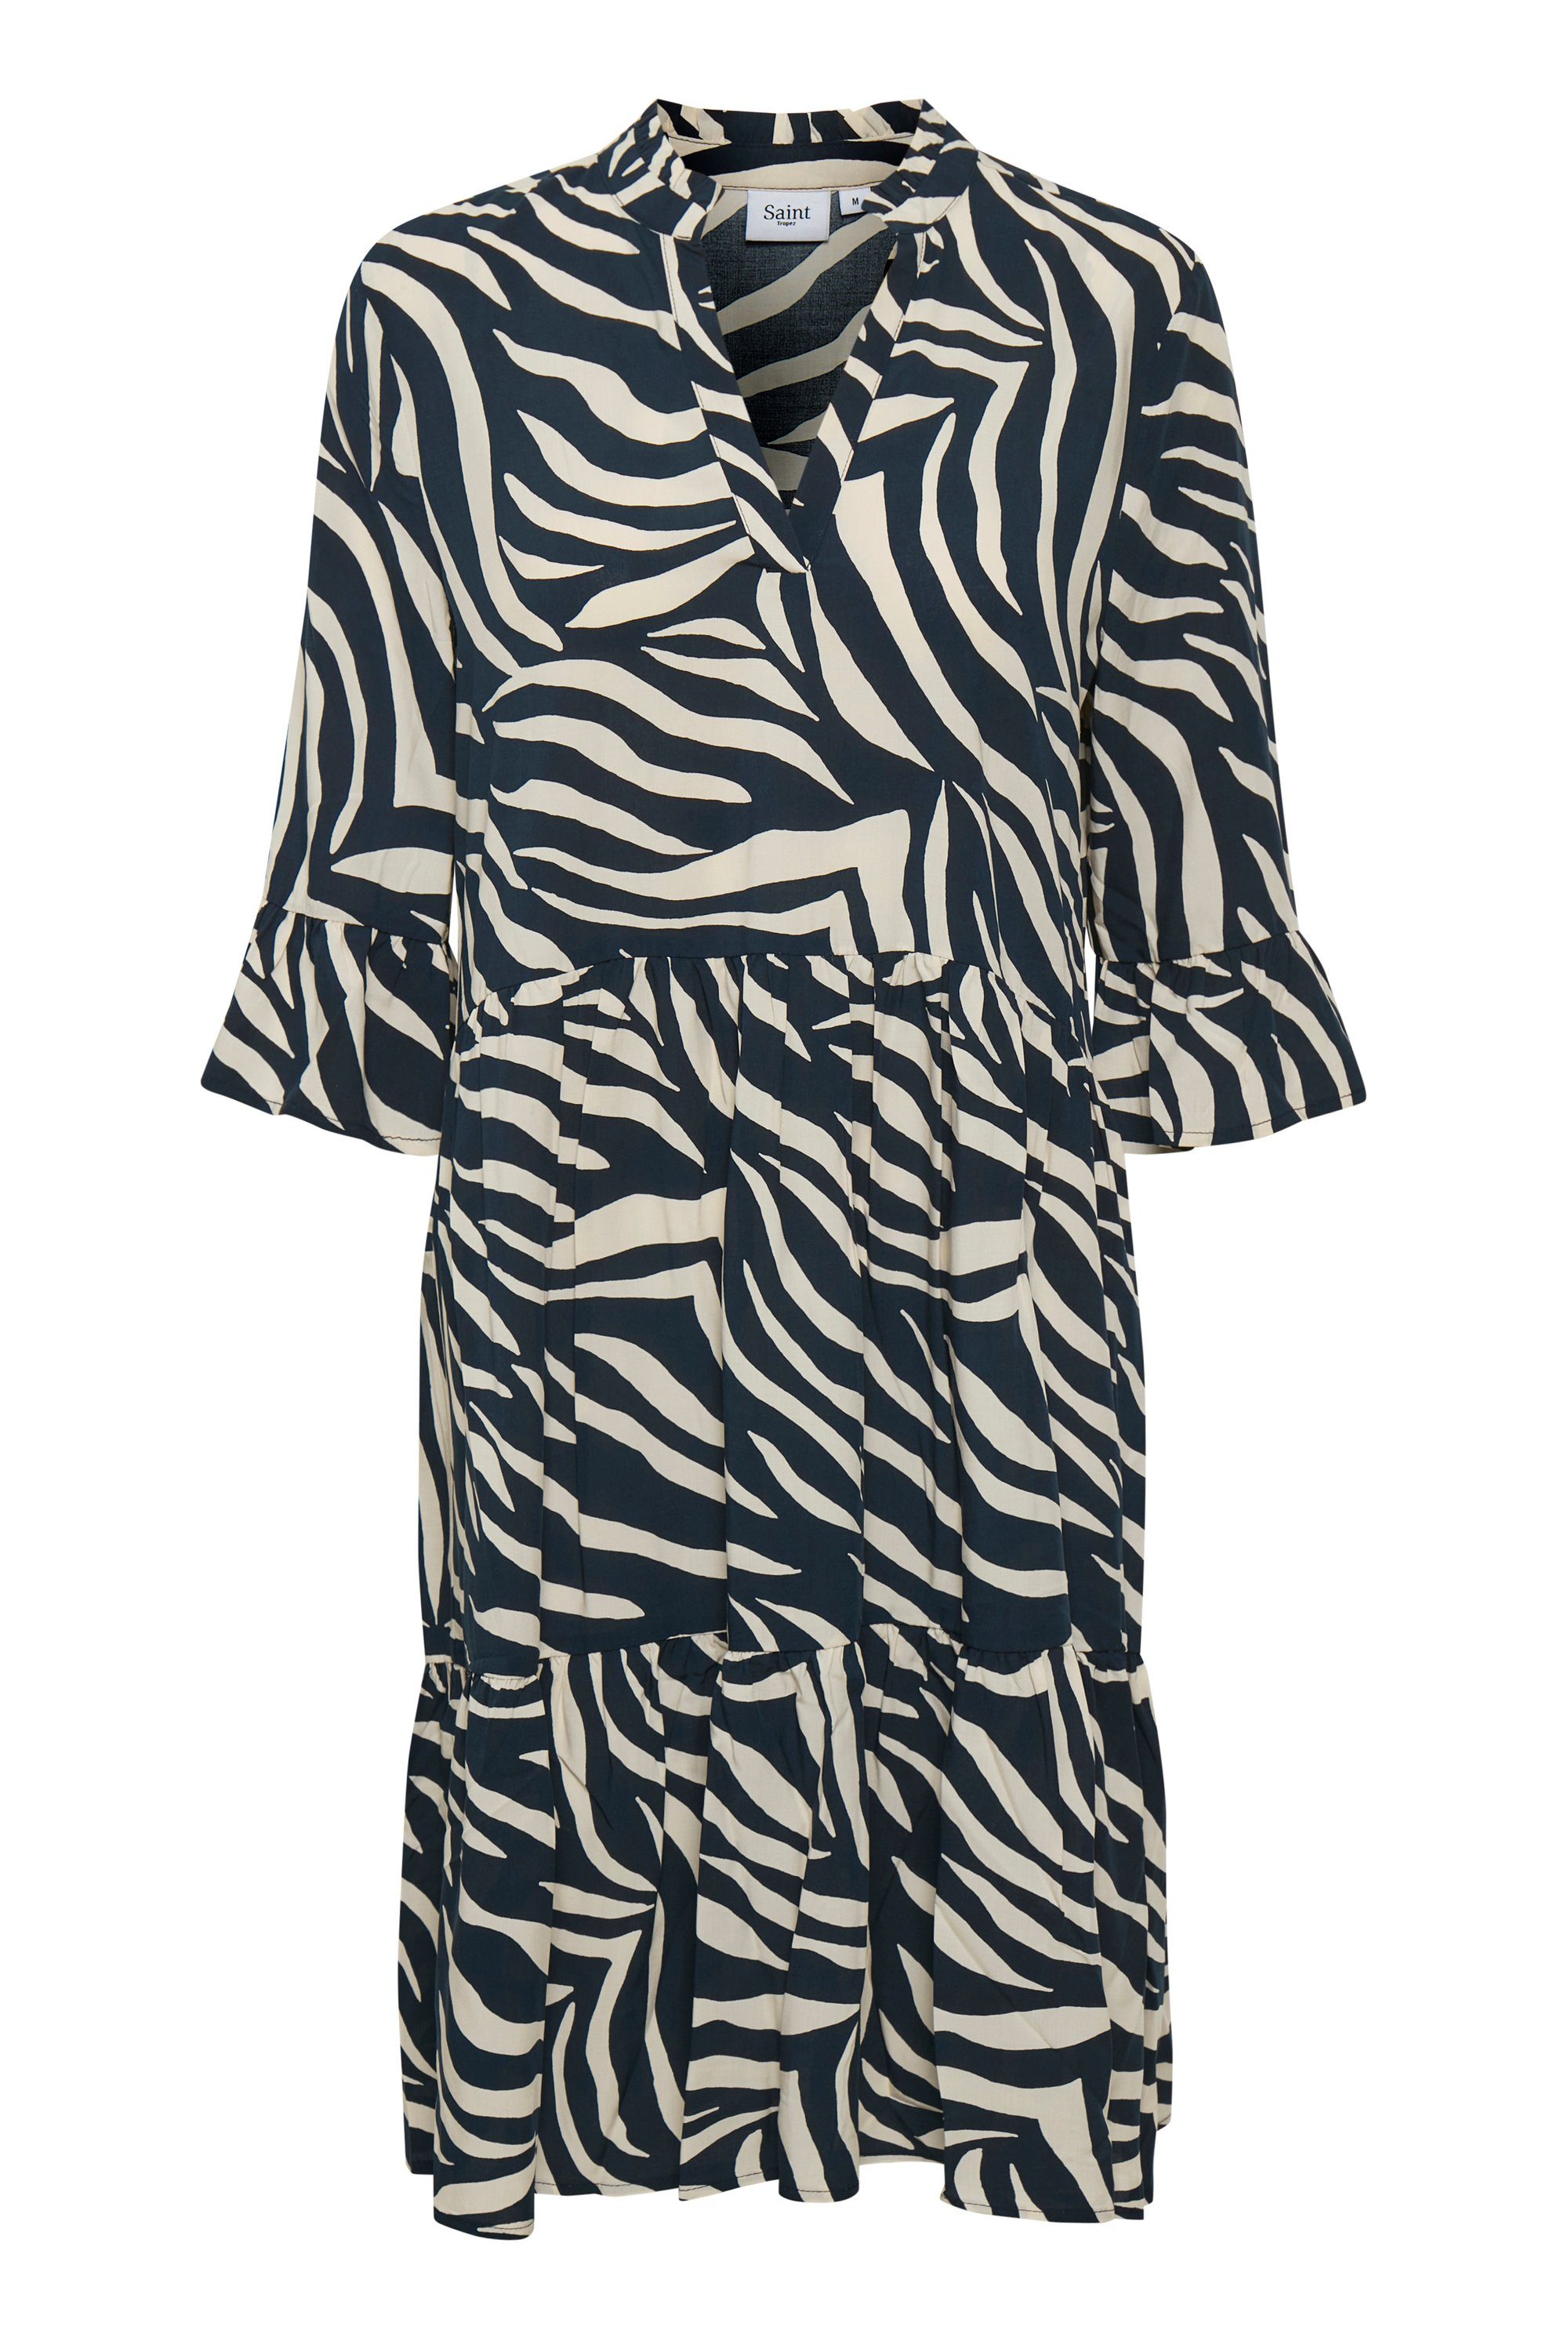 Saint Tropez Jerseykleid EdaSZ Dress Total Eclipse Zebra Skin